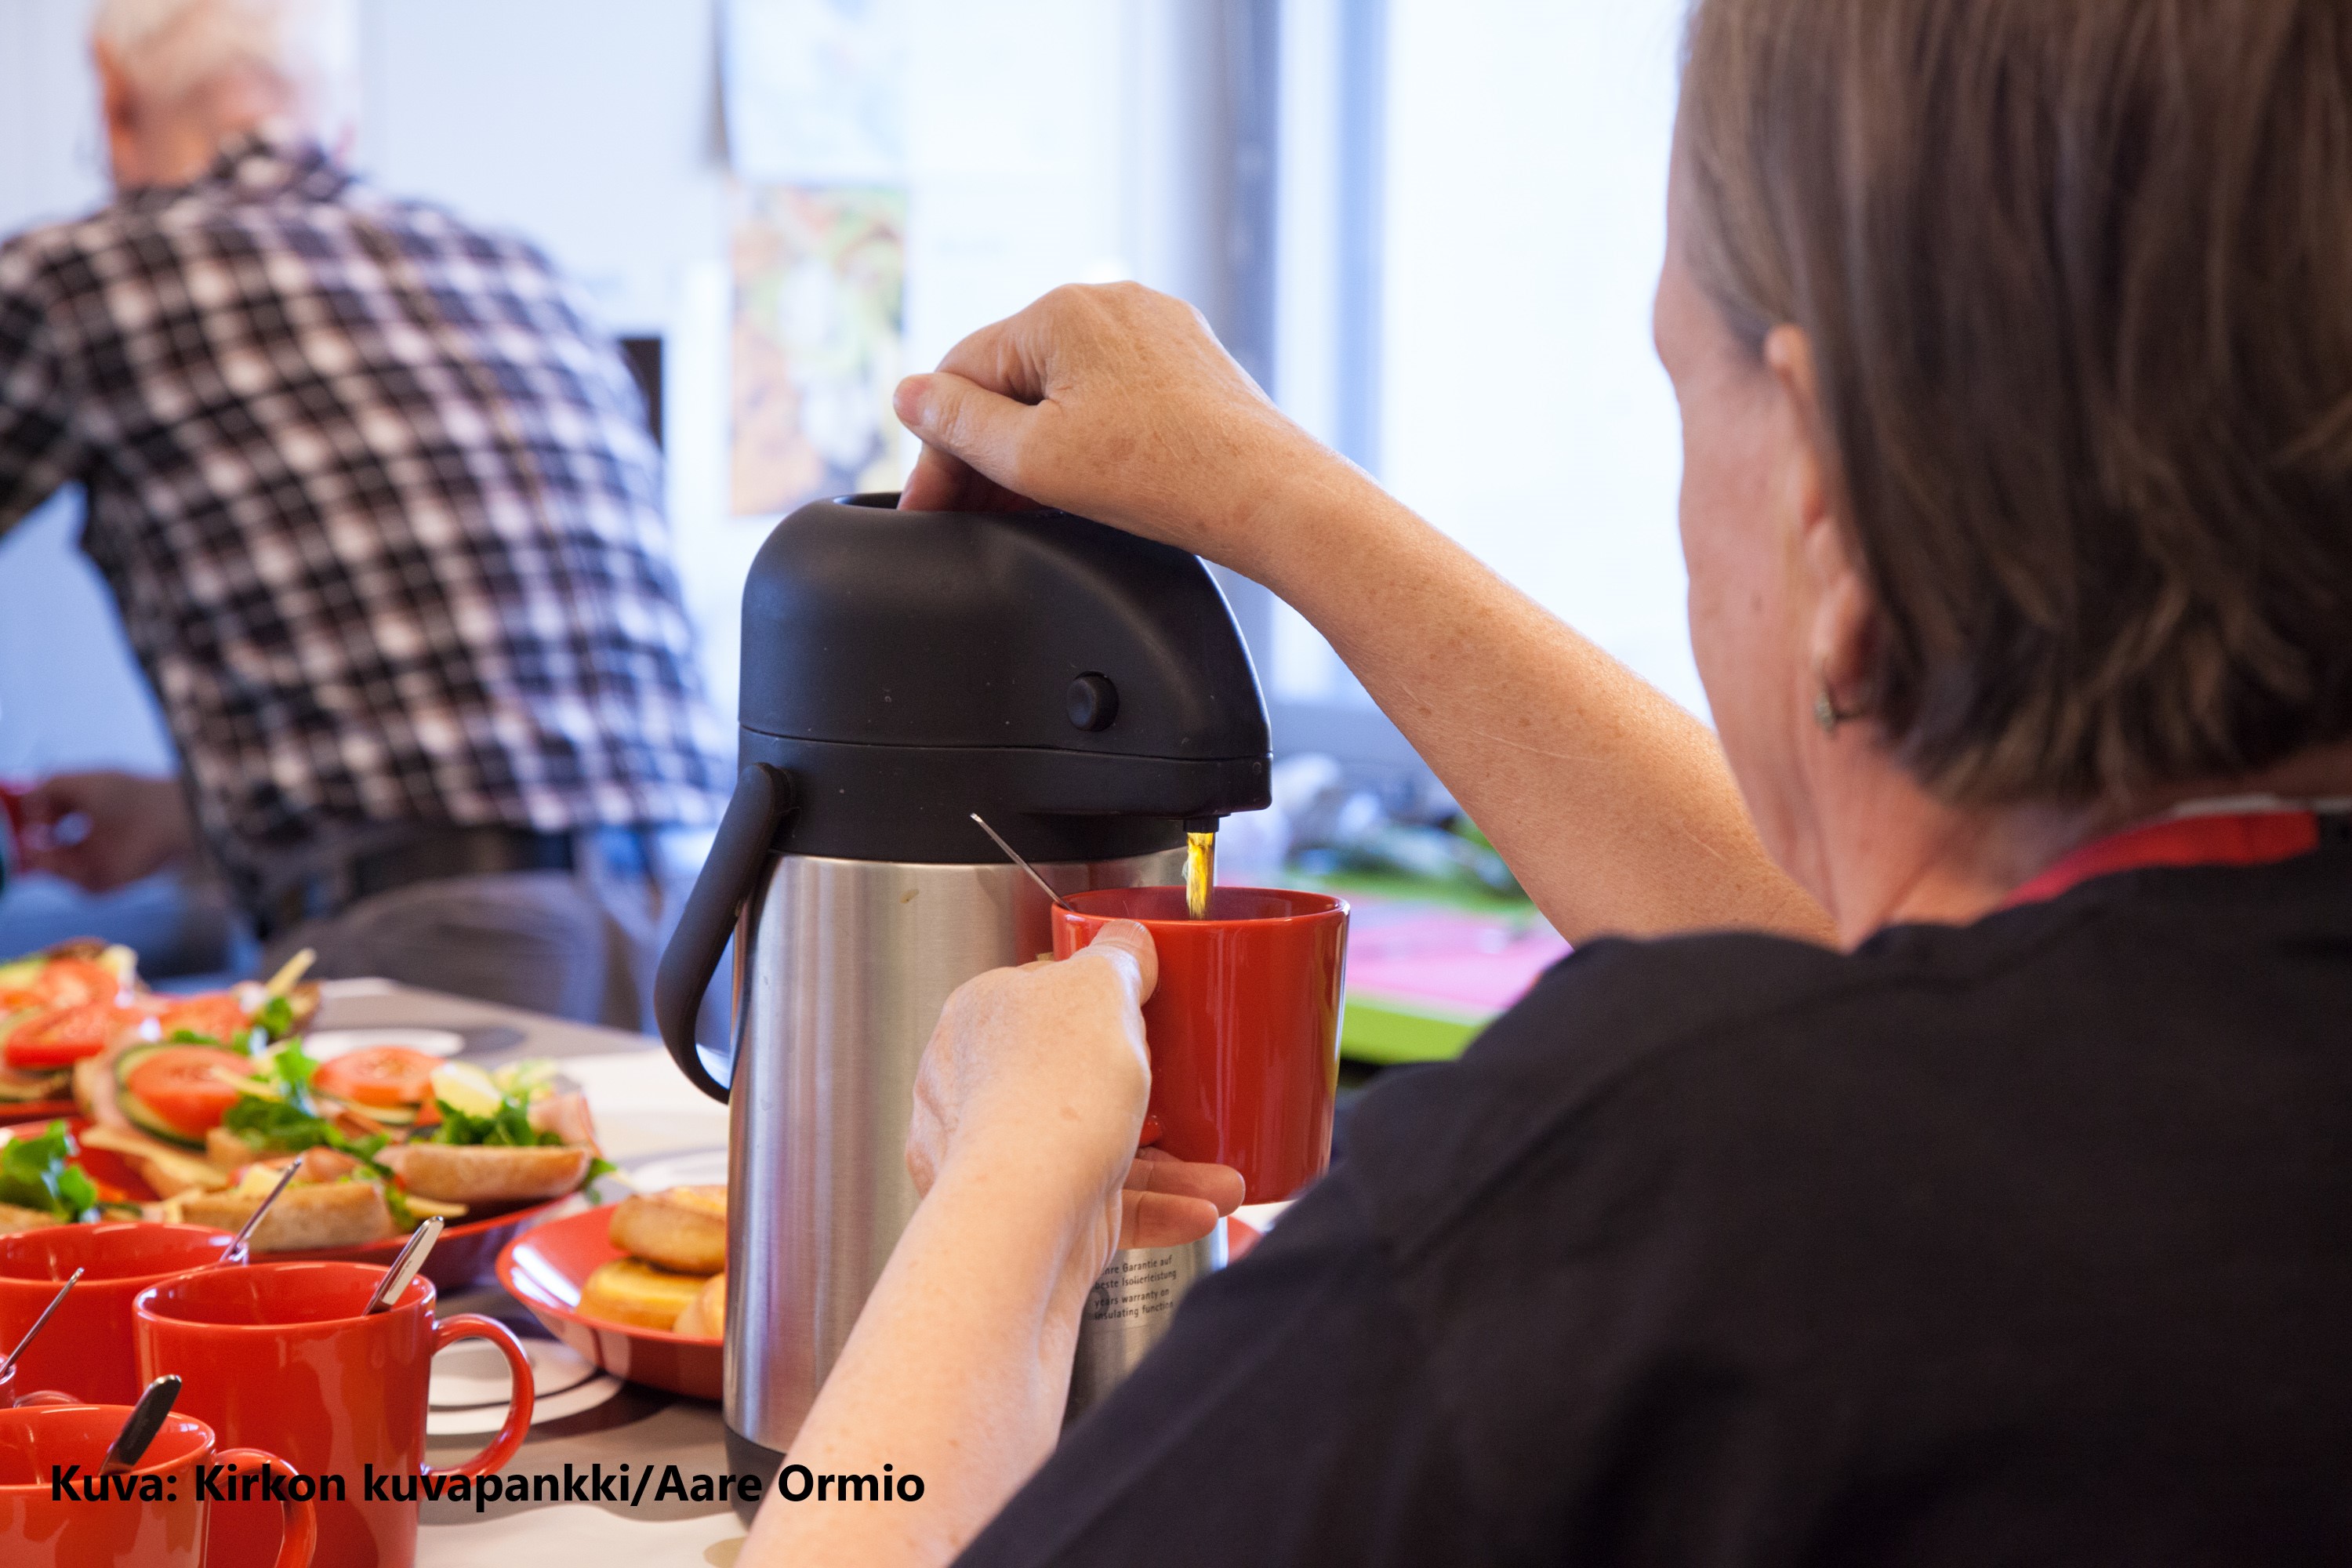 Iäkäs nainen kaataa kahvia termoskannusta kuppiin ja taustalla iäkkään miehen hahmo.